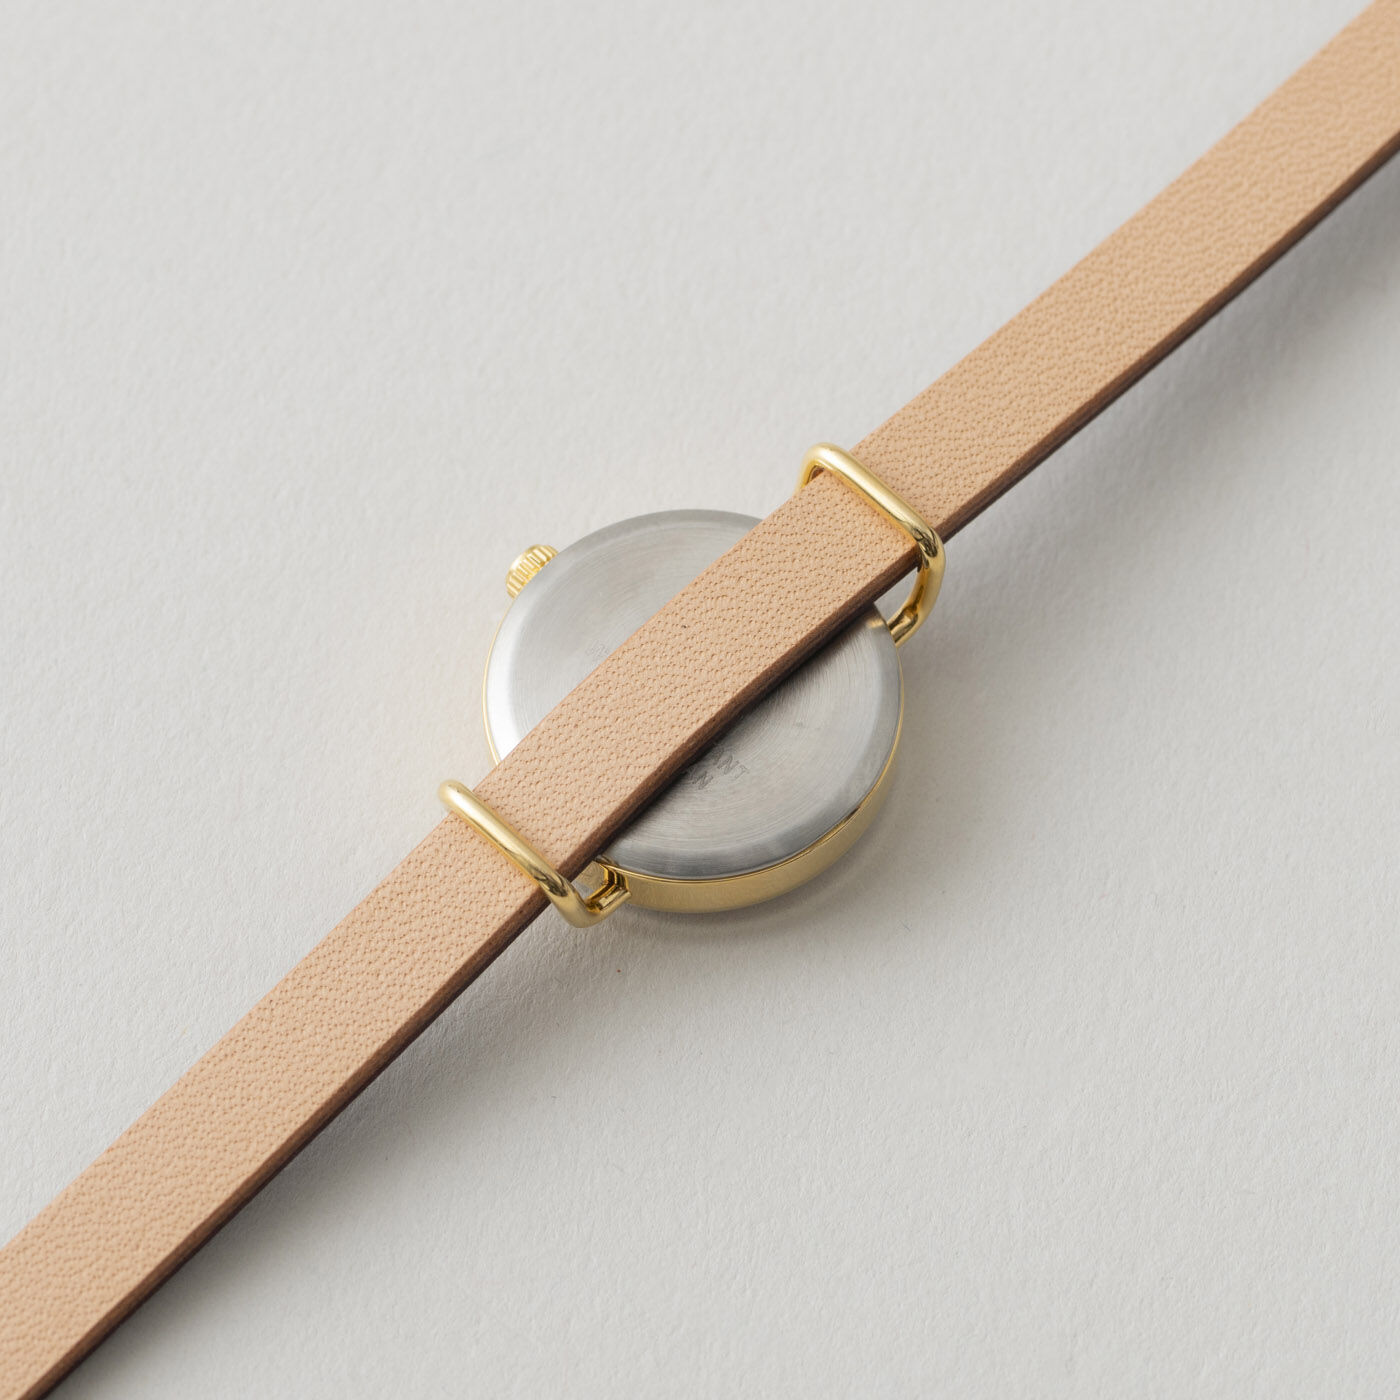 ＆Stories|金沢の時計職人が手掛けた　朝焼けに見惚れる腕時計〈マルベリーパープル〉|ベルトは付け替えも可能です。